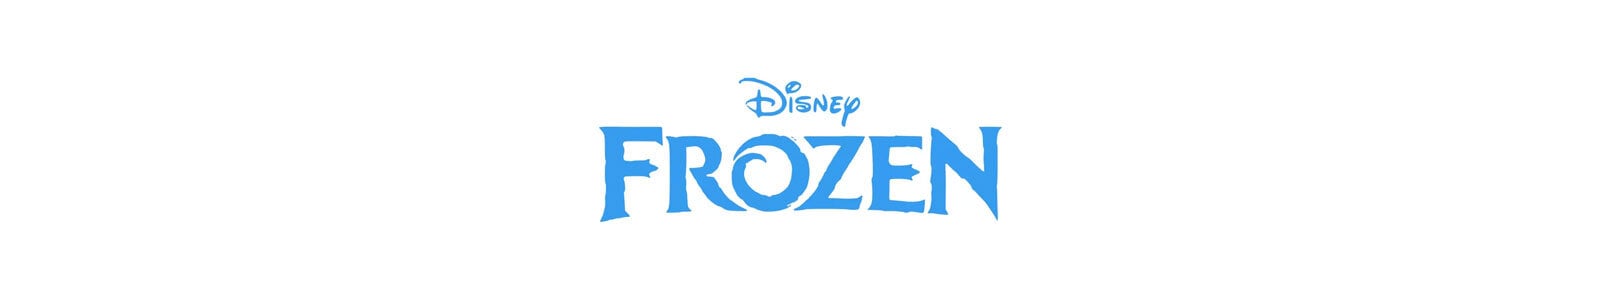 Frozen-Die Eiskönigin